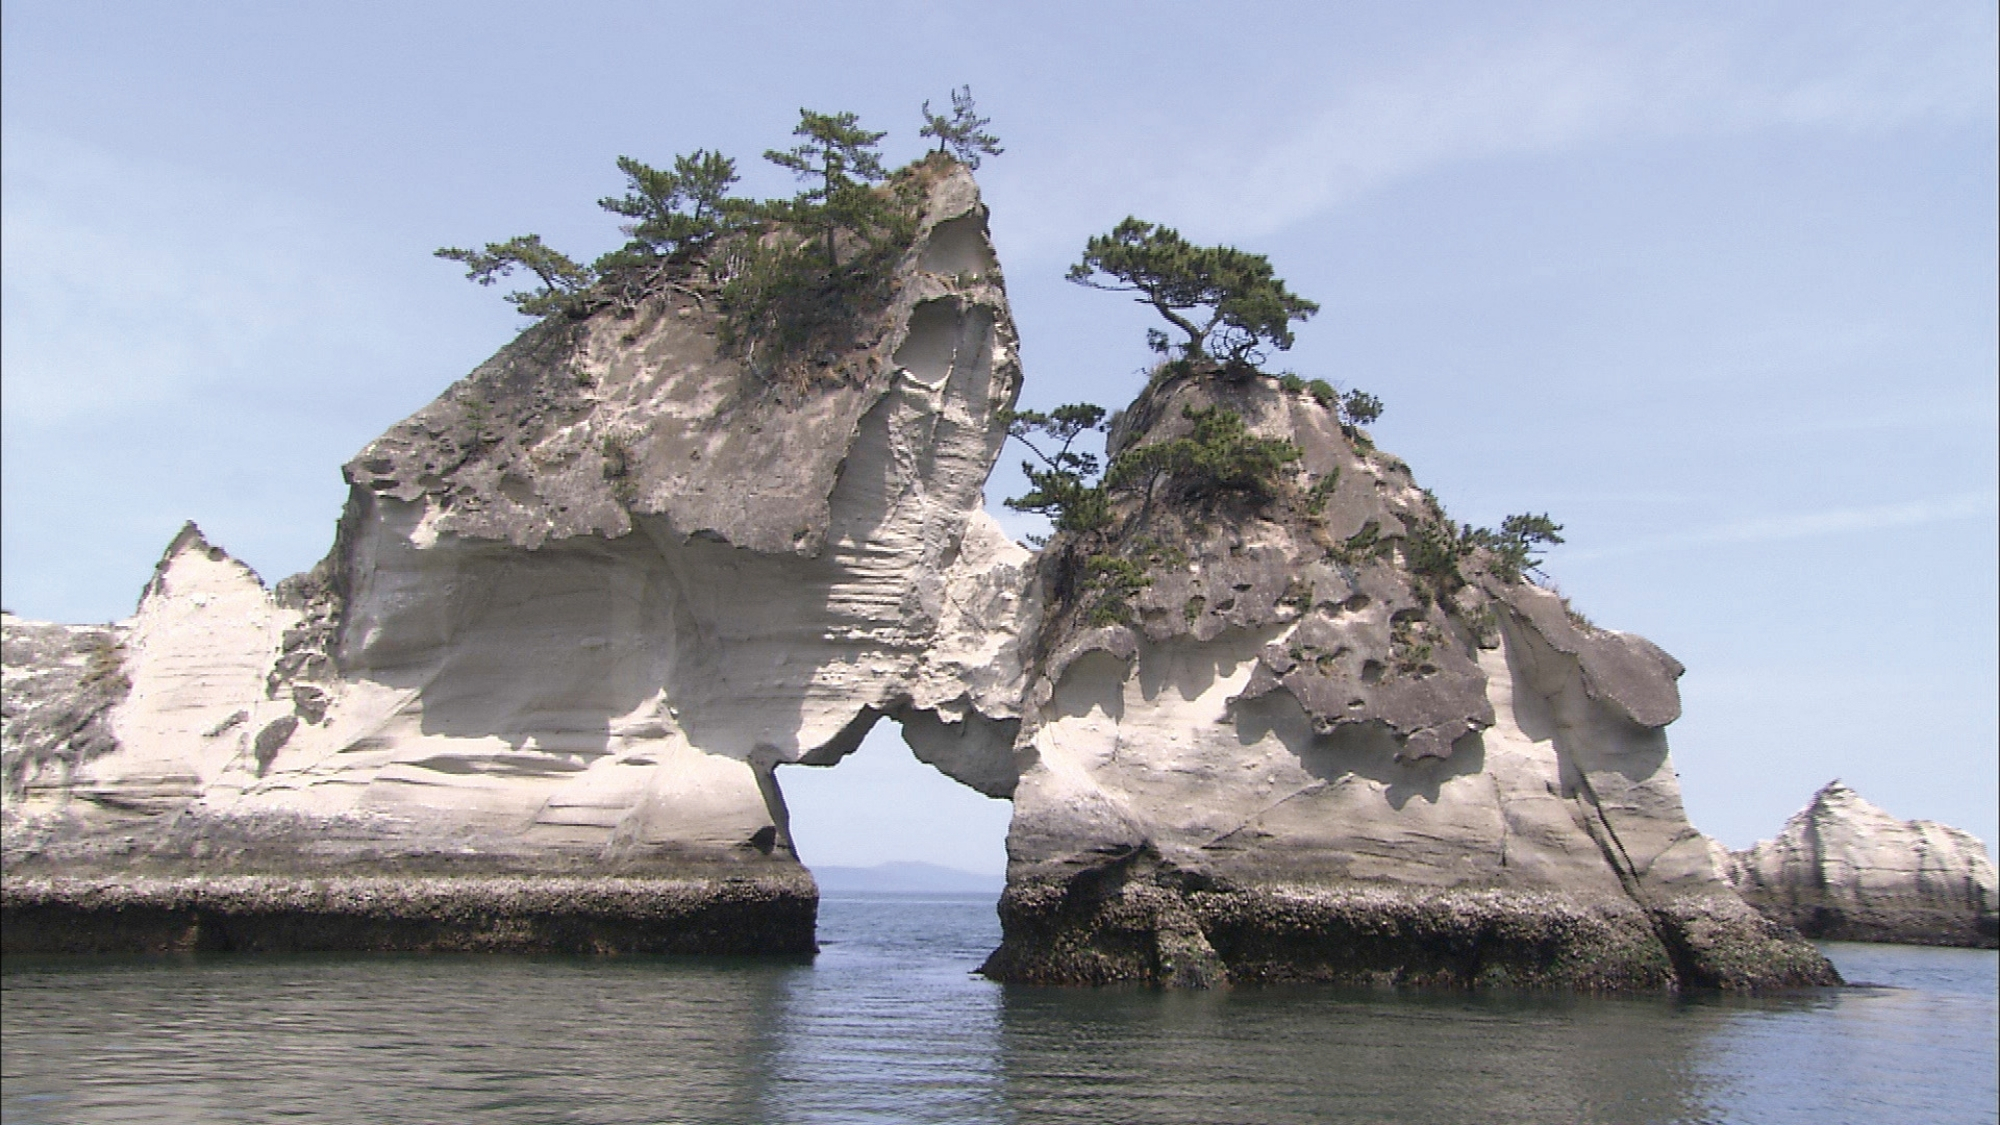 【嵯峨渓】日本三大渓の一つ。嵯峨渓を堪能するなら、遊覧船に乗るのがお勧め